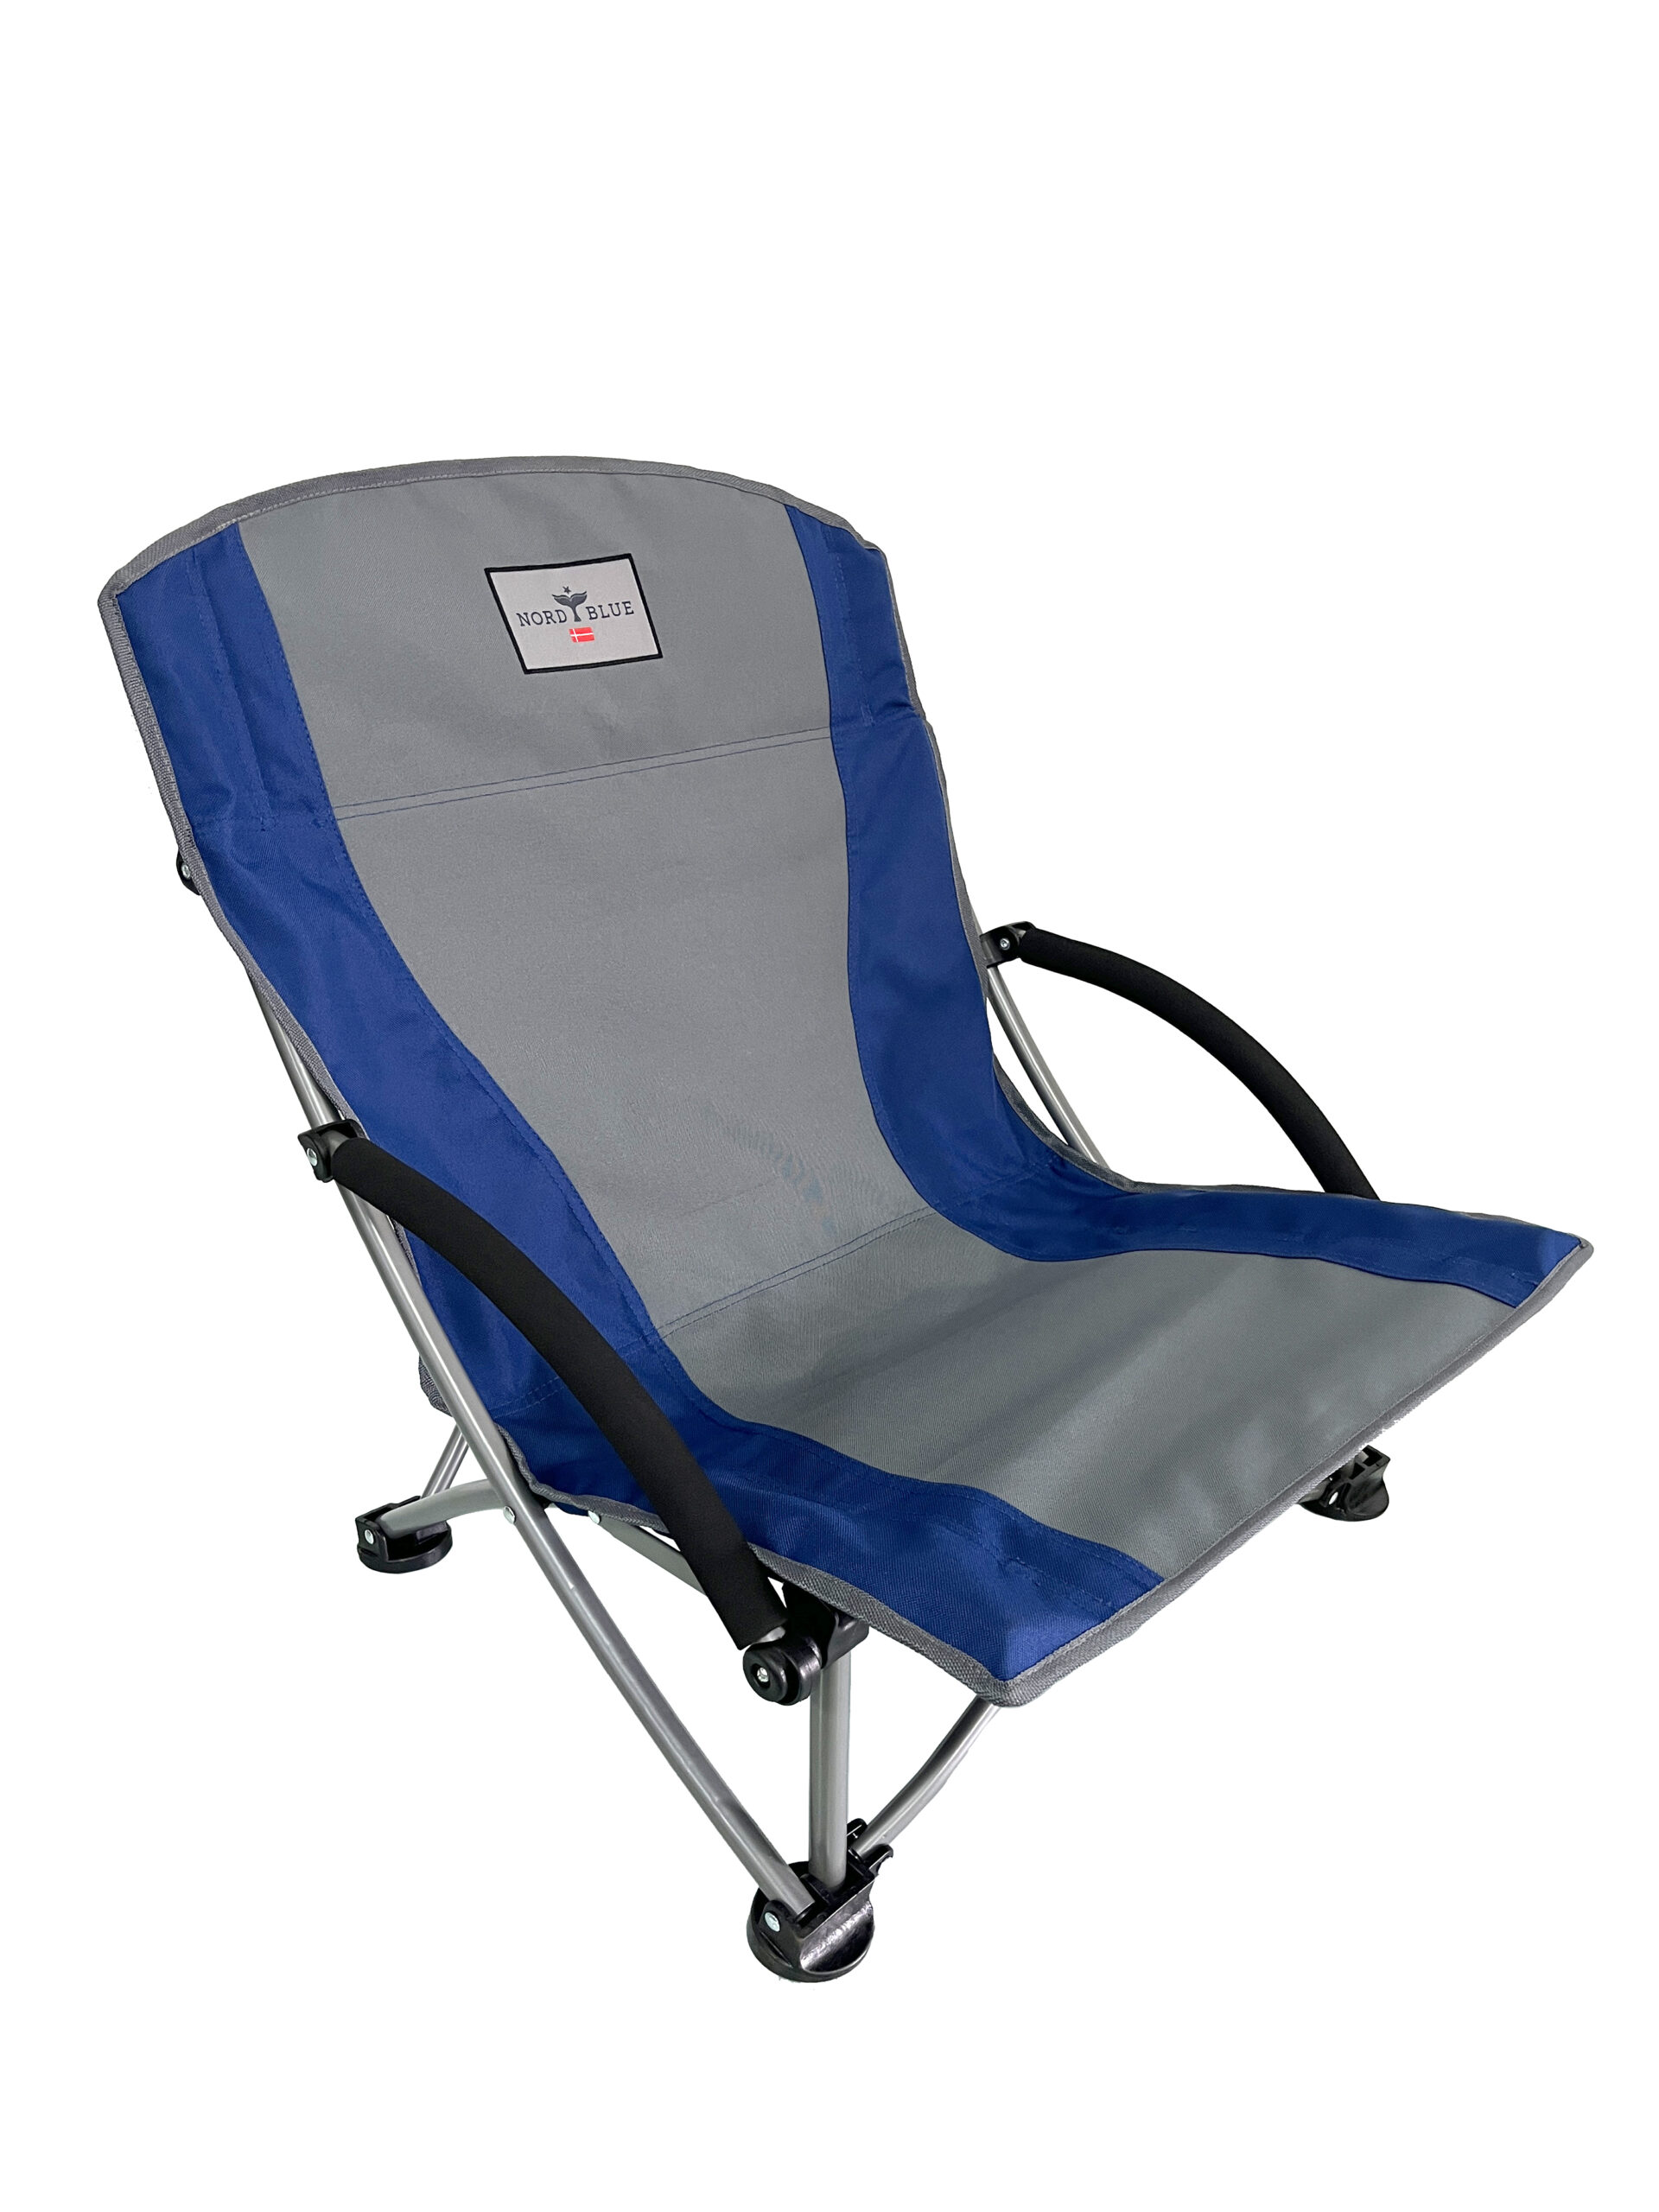 כיסא מתקפל דגם Maui Chill אפור/כחול